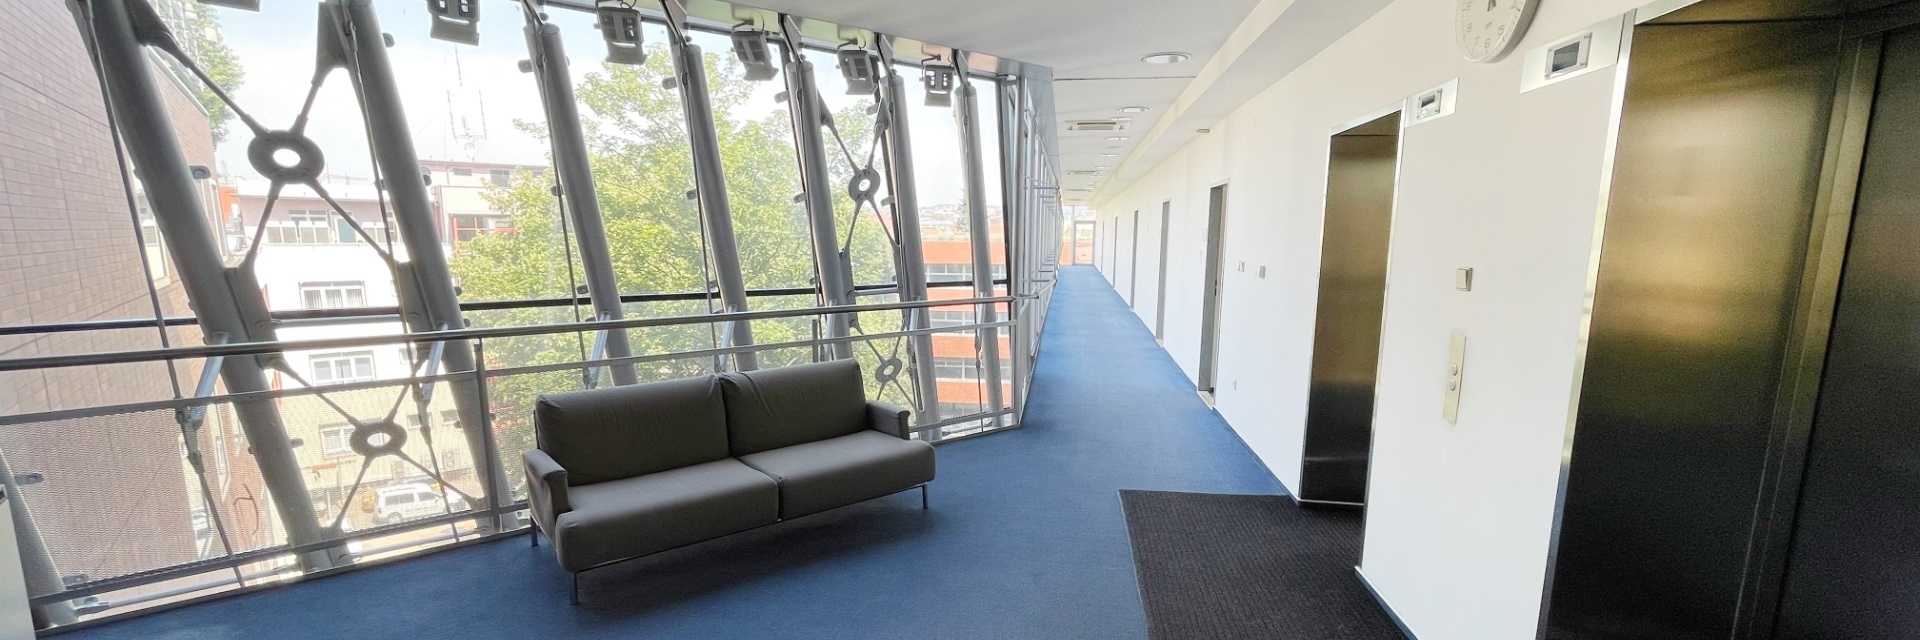 Pronájem kancelářských prostor 284 m² ve 4.NP, ulice Plynárenská, Brno